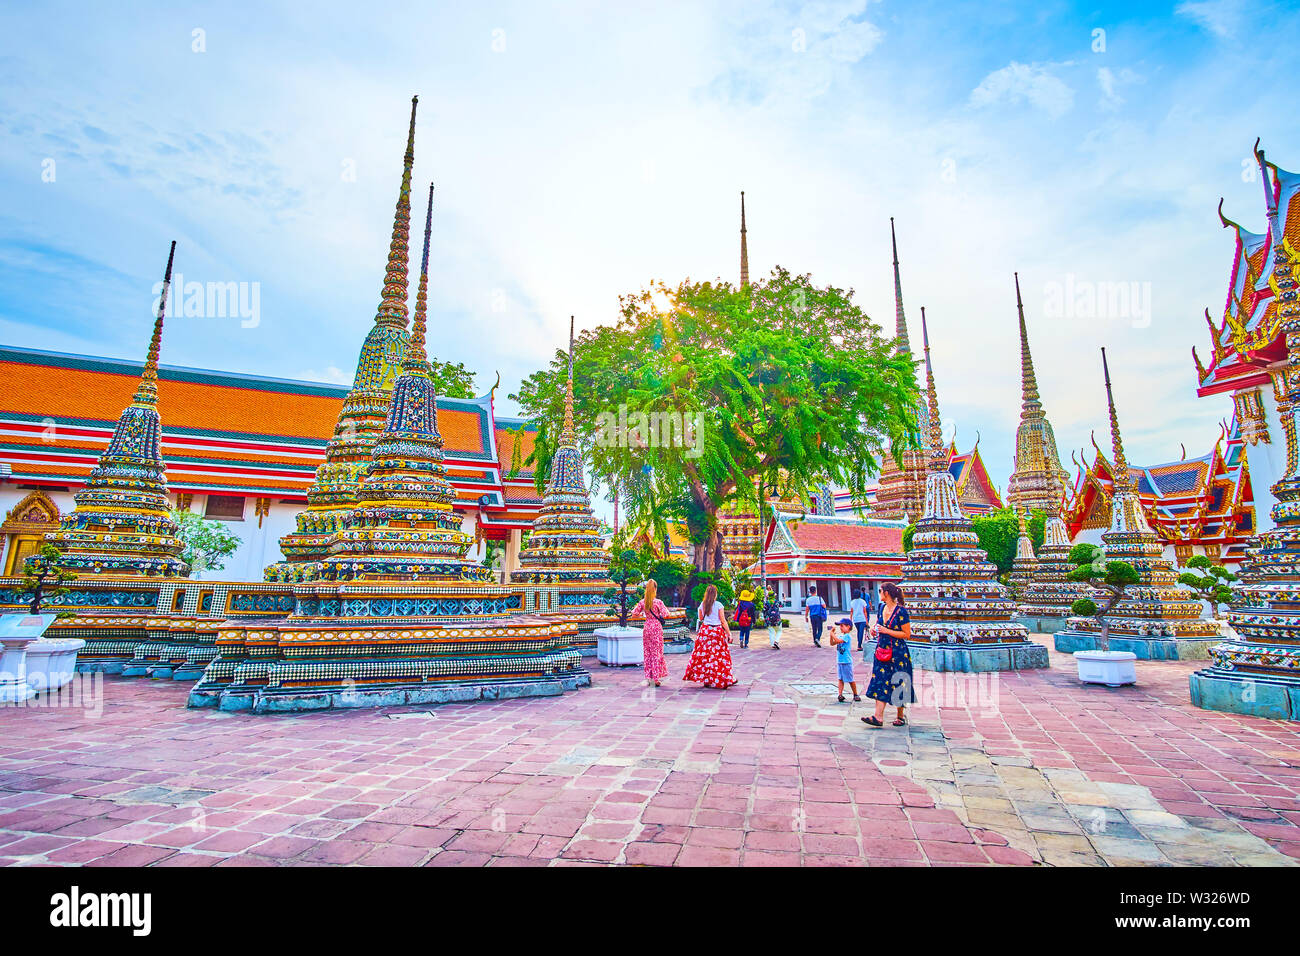 BANGKOK, THAILAND - 22. APRIL 2019: Die Touristen im Wat Pho Tempel mit Blick auf die prächtige Architektur der surriunding Schreine, am 22. April i Stockfoto